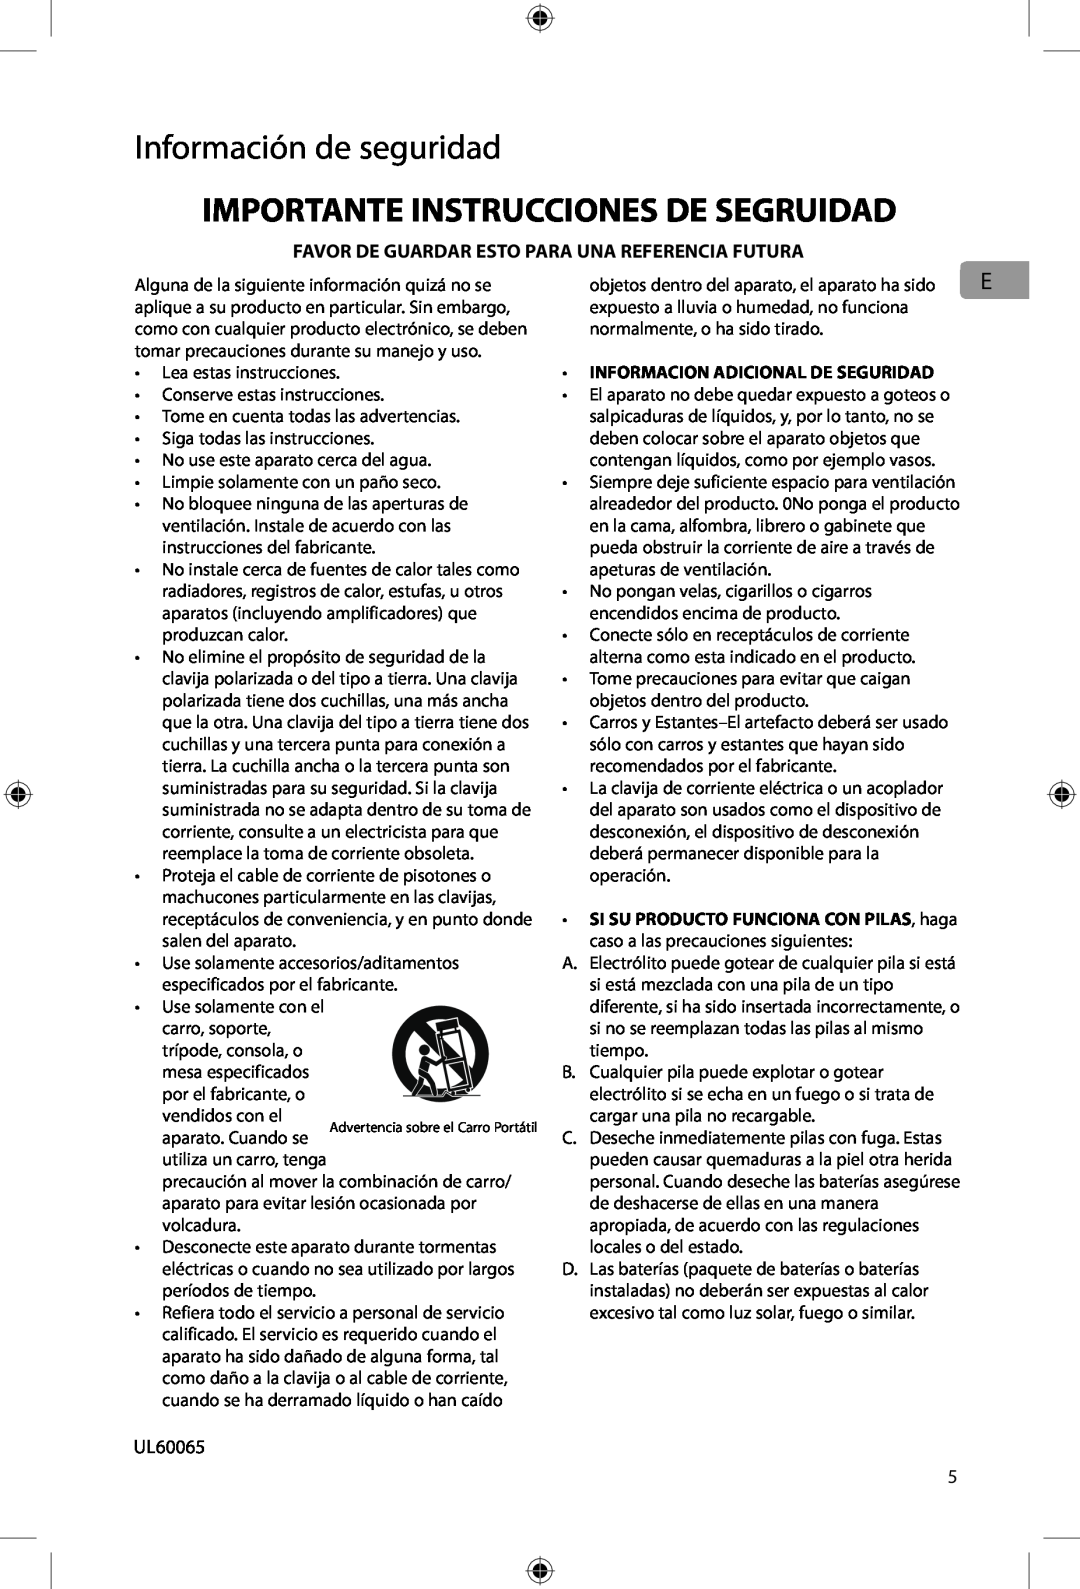 Acoustic Research ARIR200 user manual Importante Instrucciones De Segruidad, Información de seguridad 